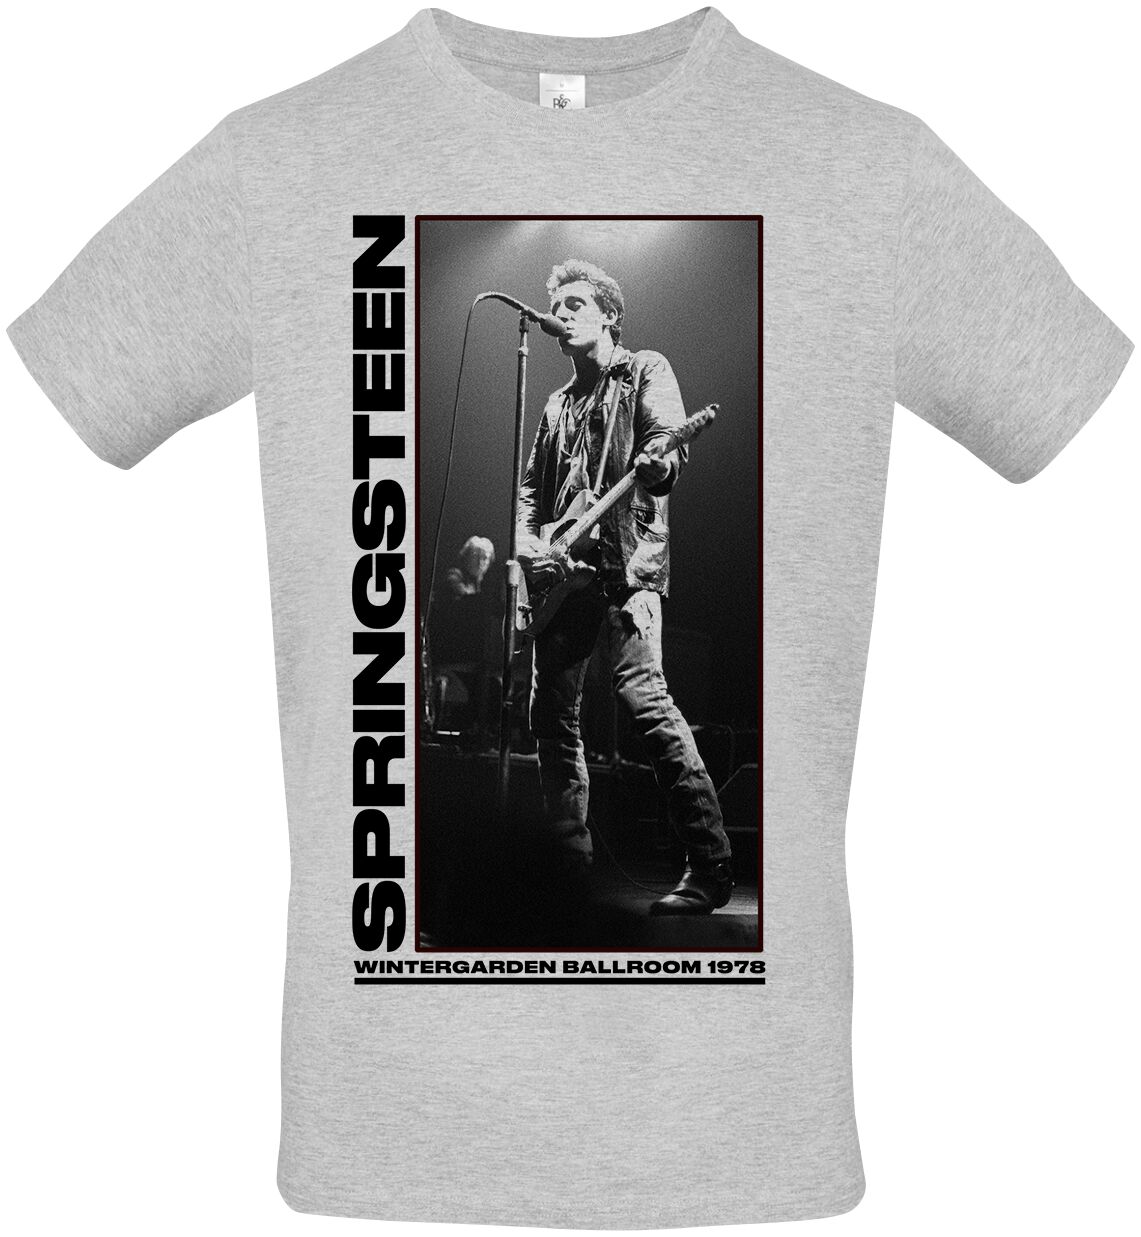 Bruce Springsteen T-Shirt - Wintergarden Photo - S bis XXL - für Männer - Größe XL - grau meliert  - Lizenziertes Merchandise!